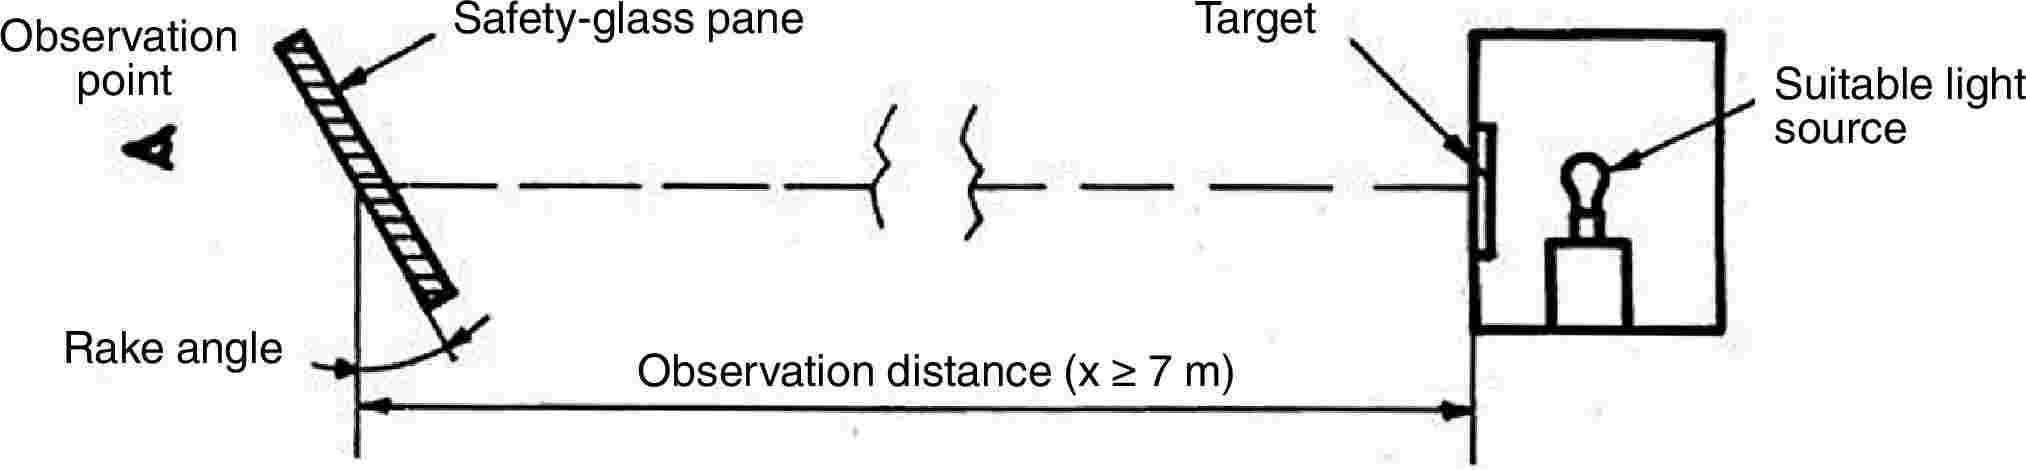 Observation pointSafety-glass paneTargetSuitable light sourceRake angleObservation distance (x ≥ 7 m)